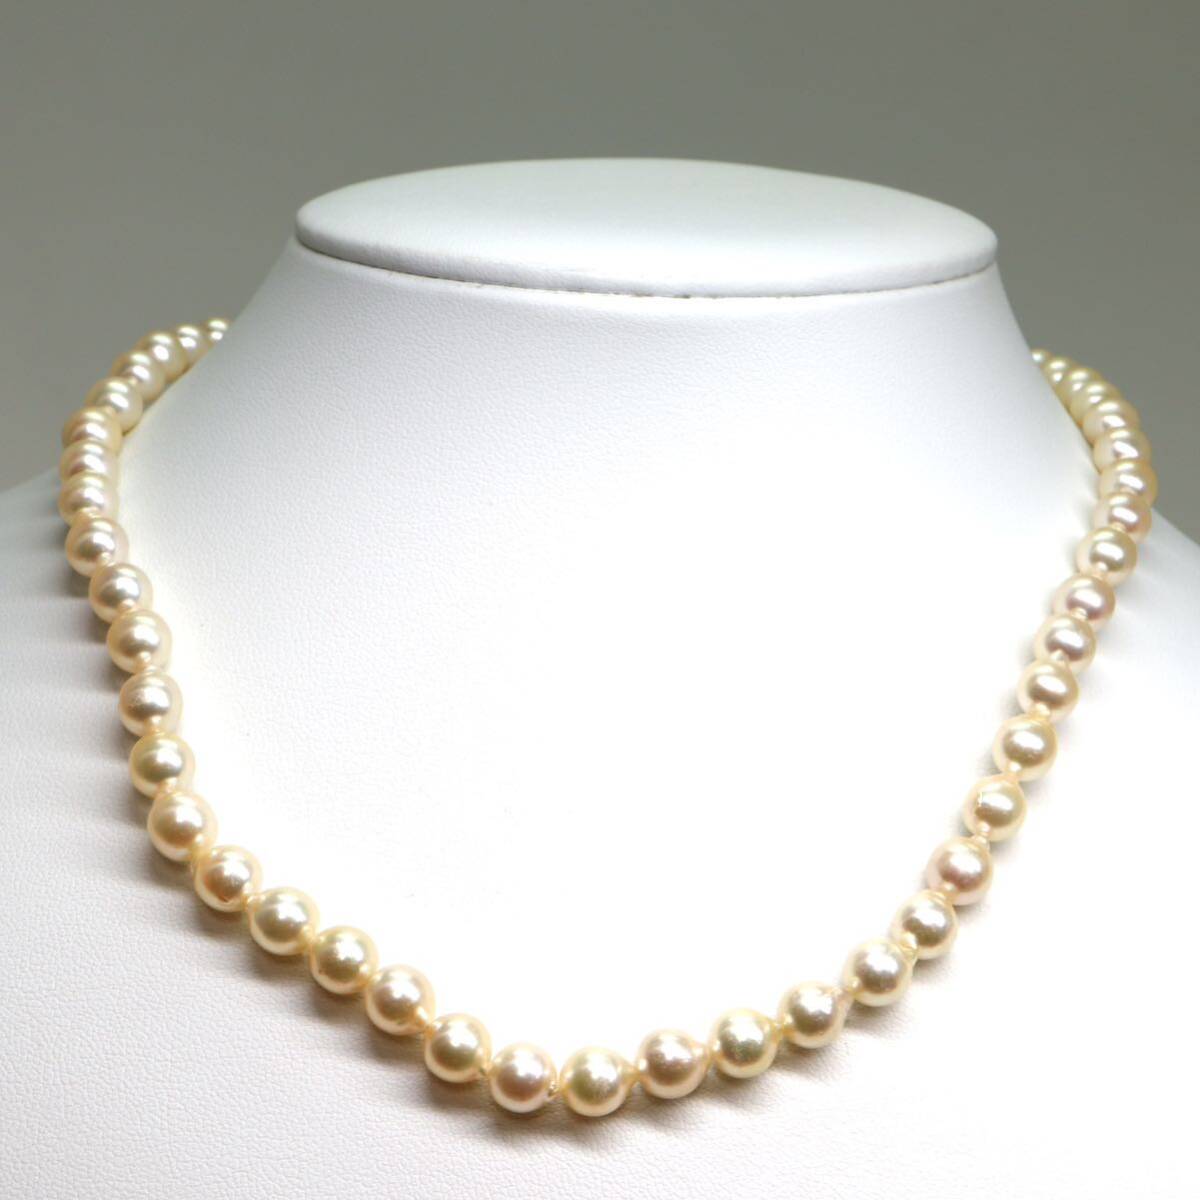 《アコヤ本真珠ネックレス》M 約6.5-7.0mm珠 25.4g 約41cm pearl necklace ジュエリー jewelry DA0/DA